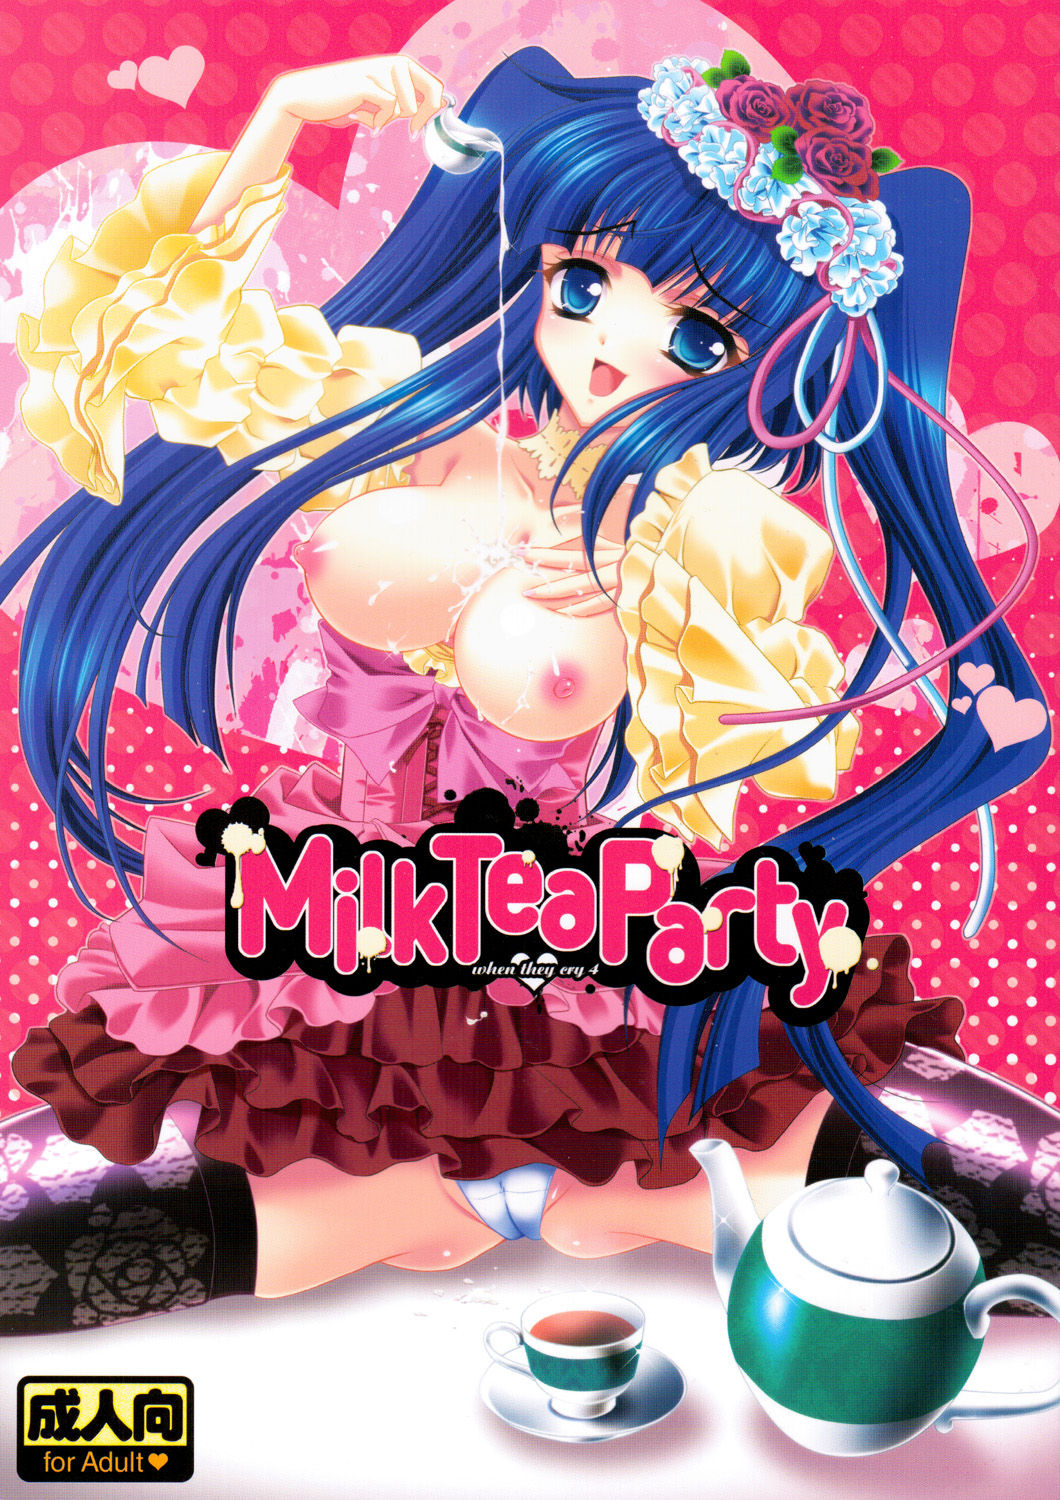 [Actively Dawn] Milk Tea Party (Umineko no Naku koro ni) 